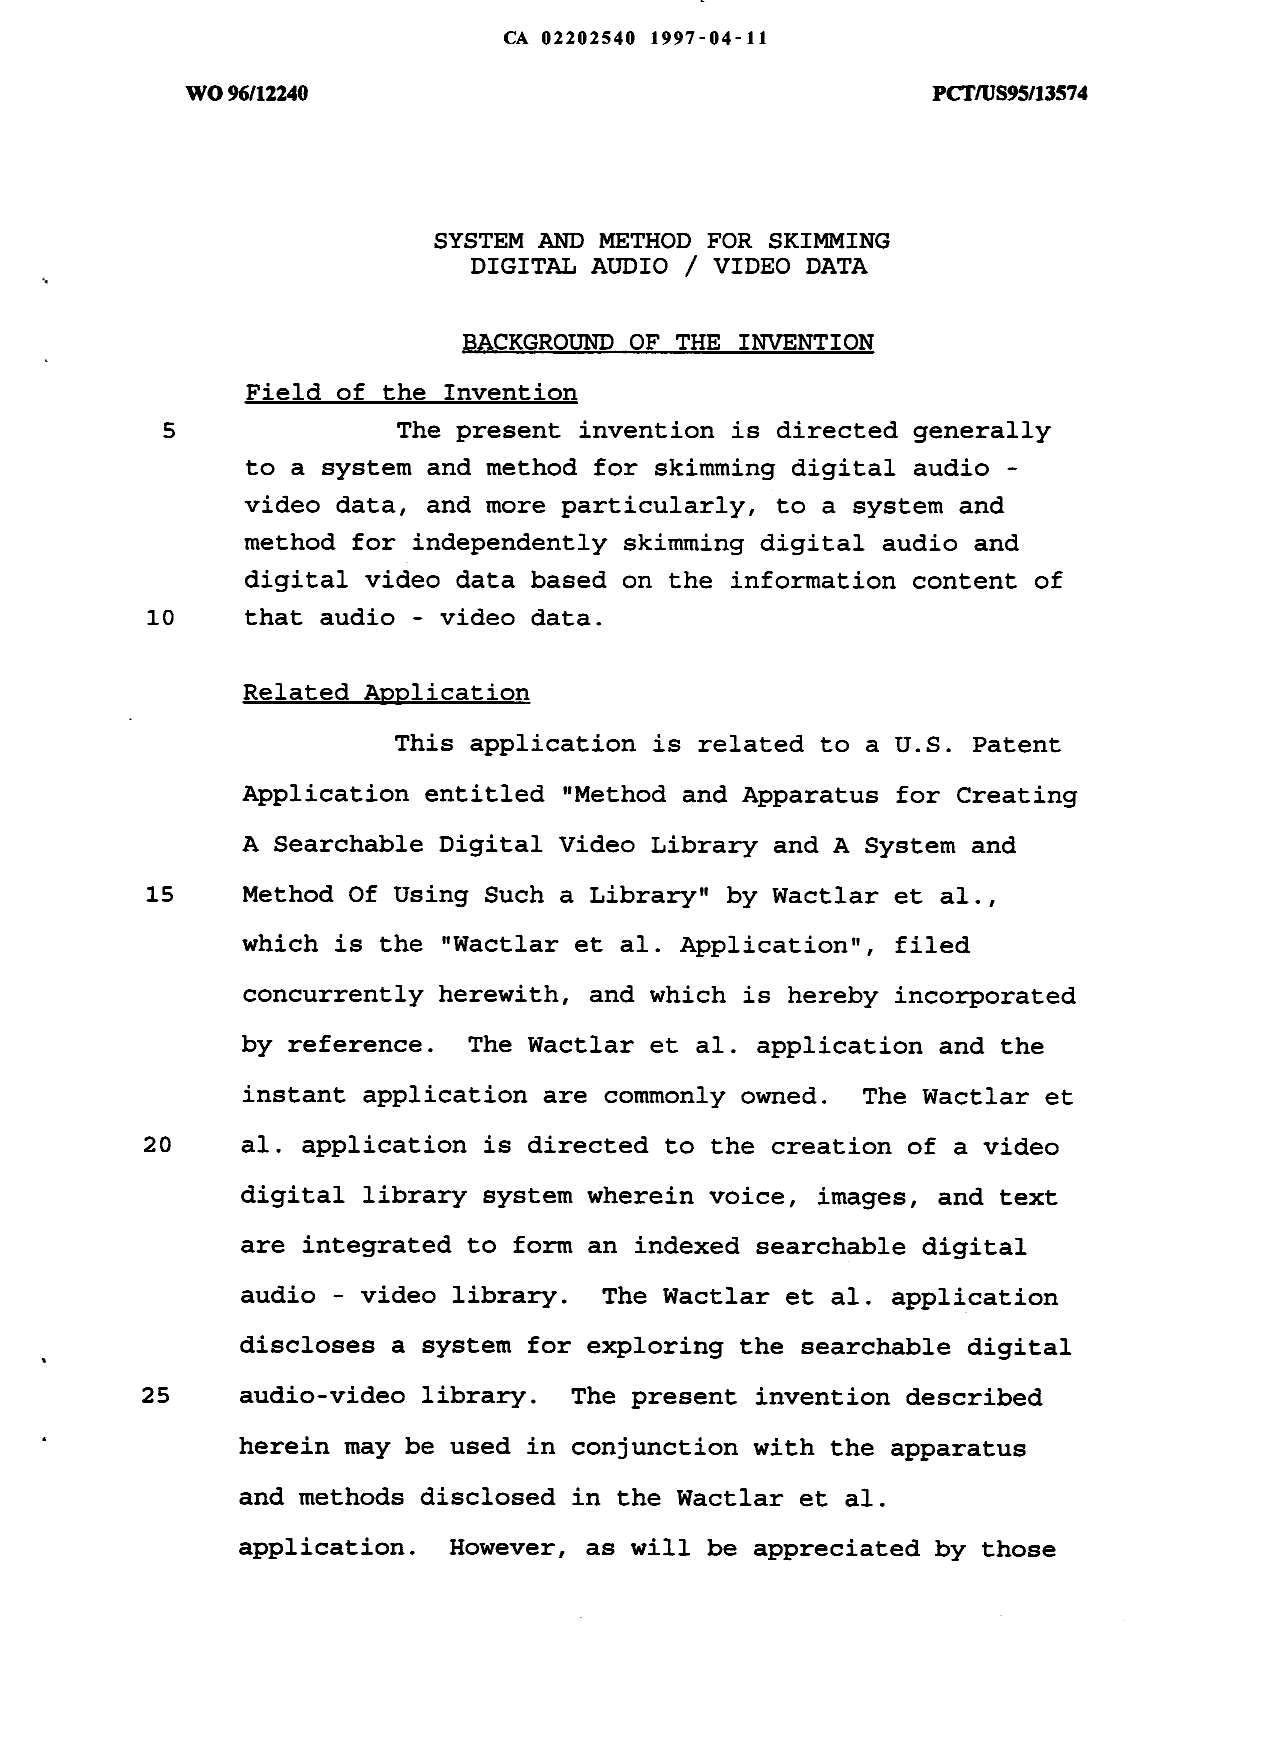 Canadian Patent Document 2202540. Description 19970411. Image 1 of 22